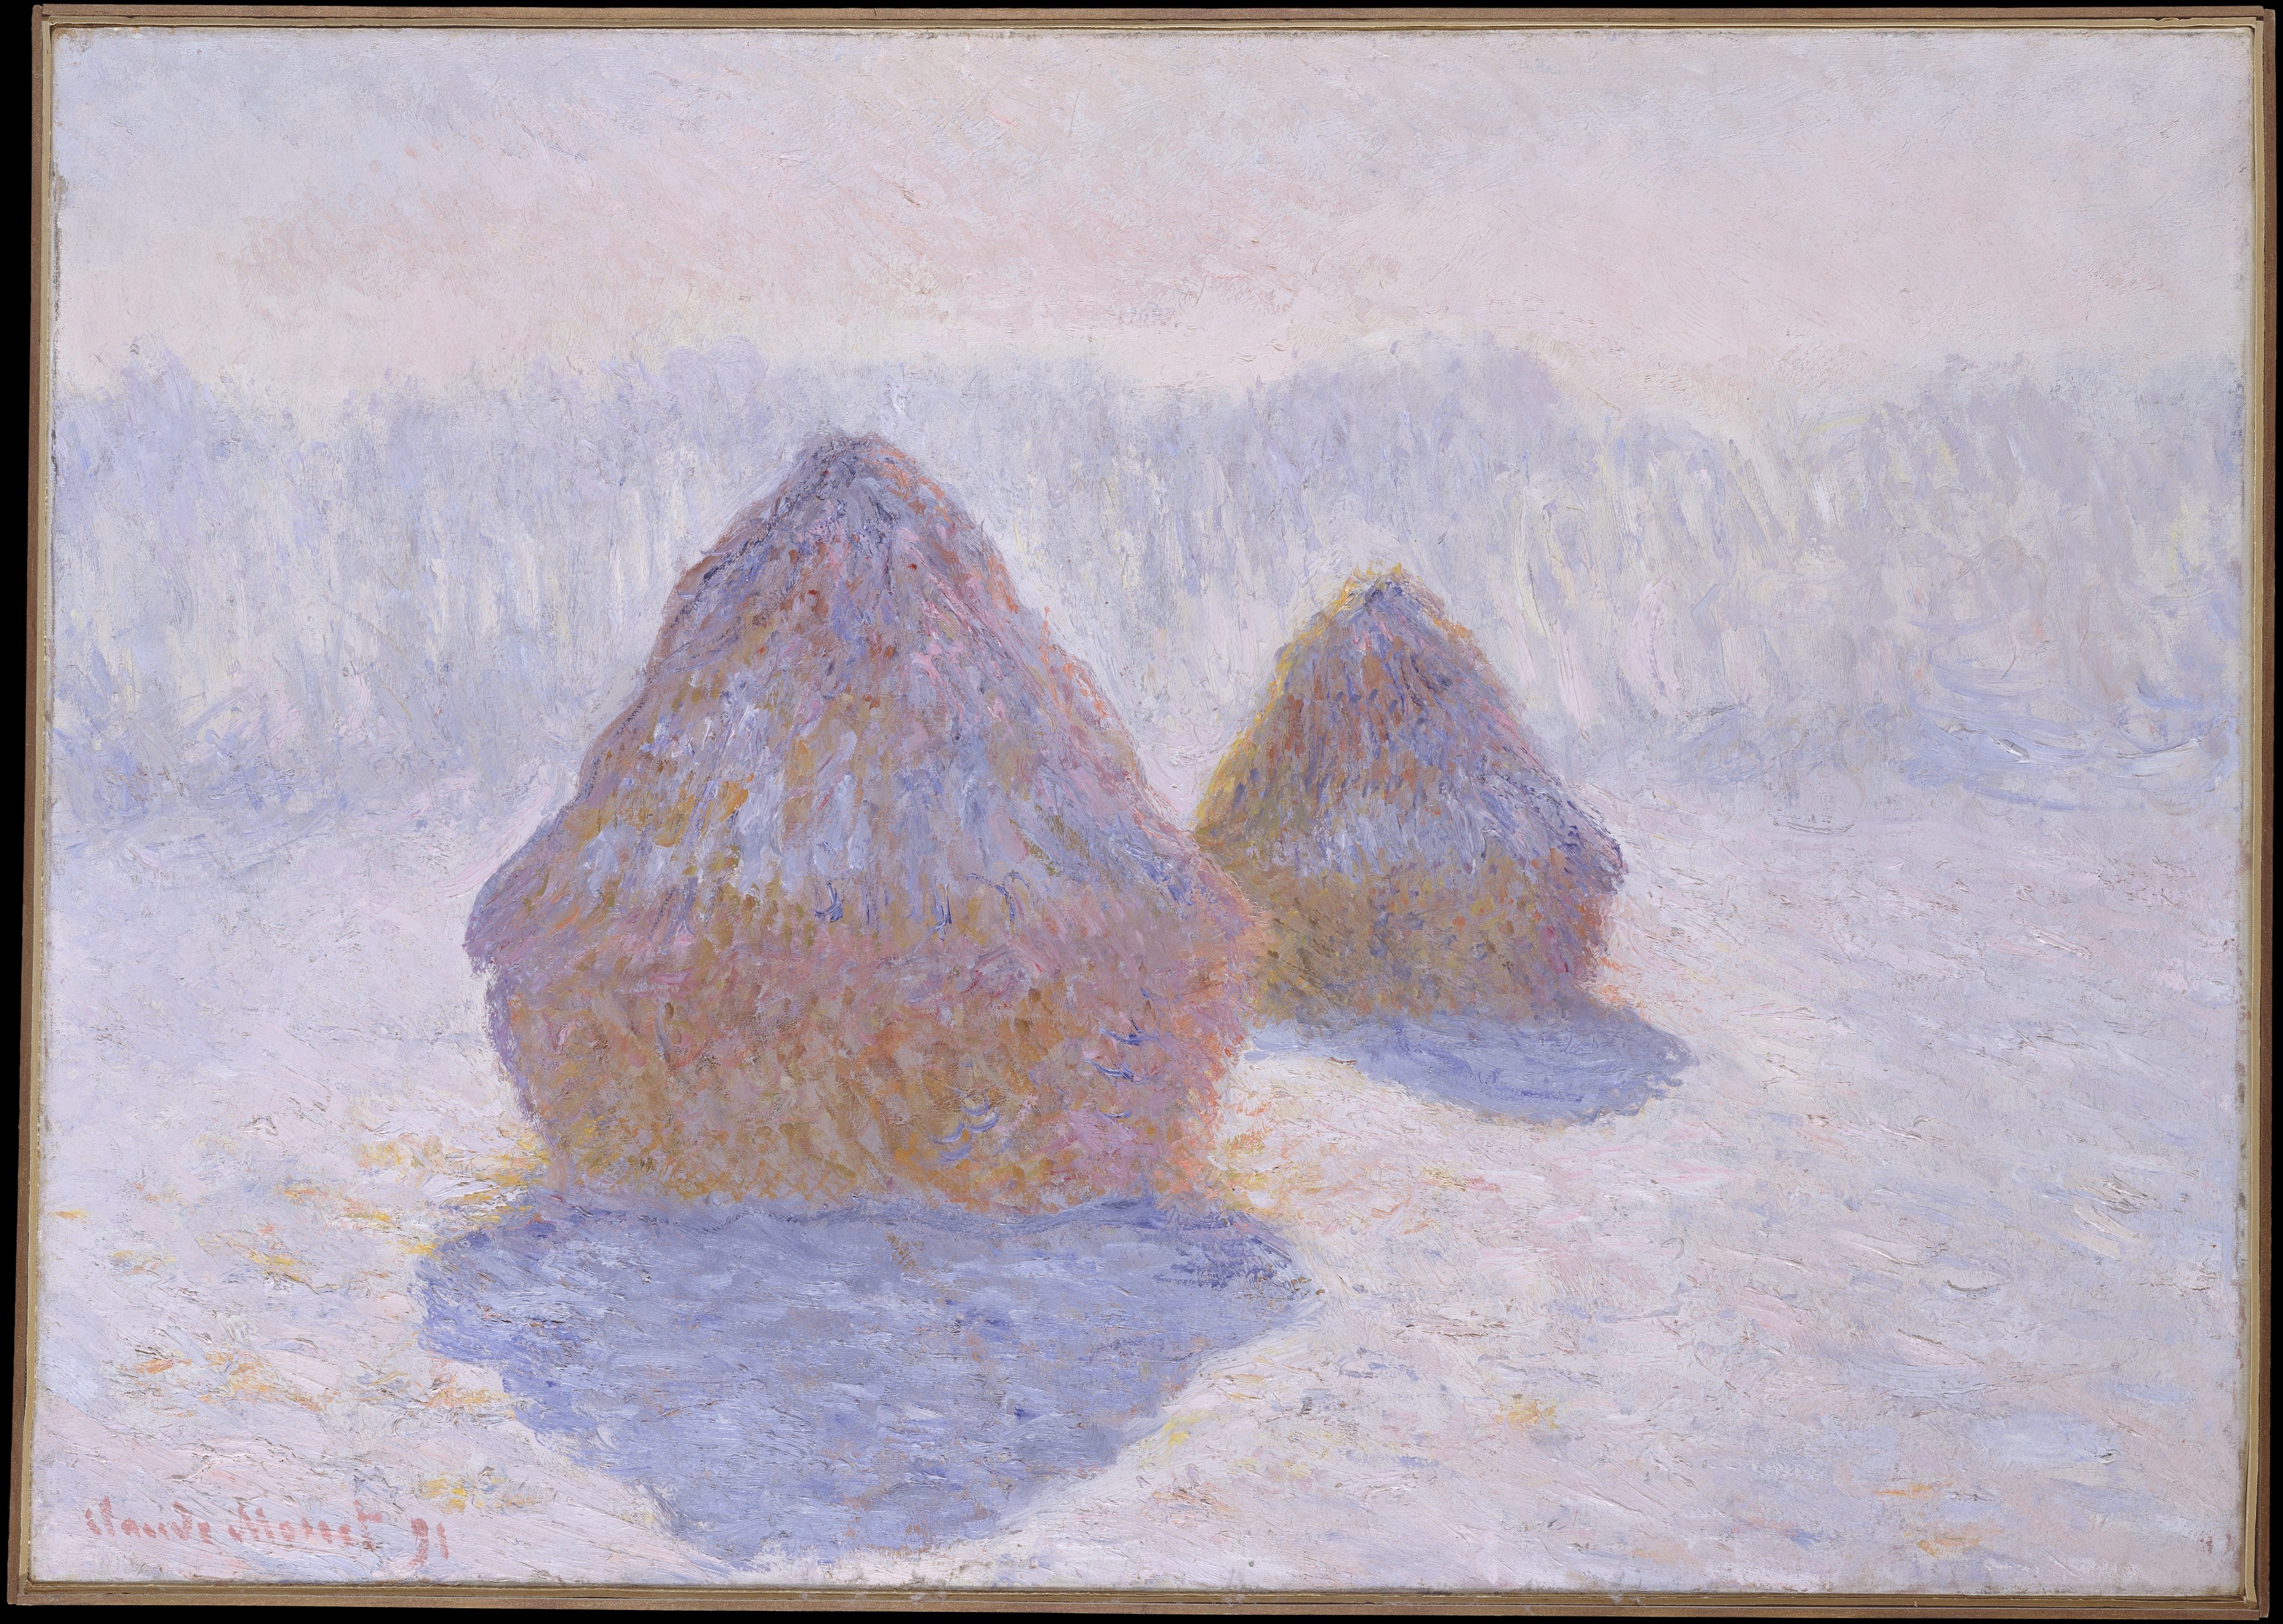 کومه علف (تاثیرات برف و نور خورشید) by Claude Monet - 1891 - 65.4 x 92.1 cm 